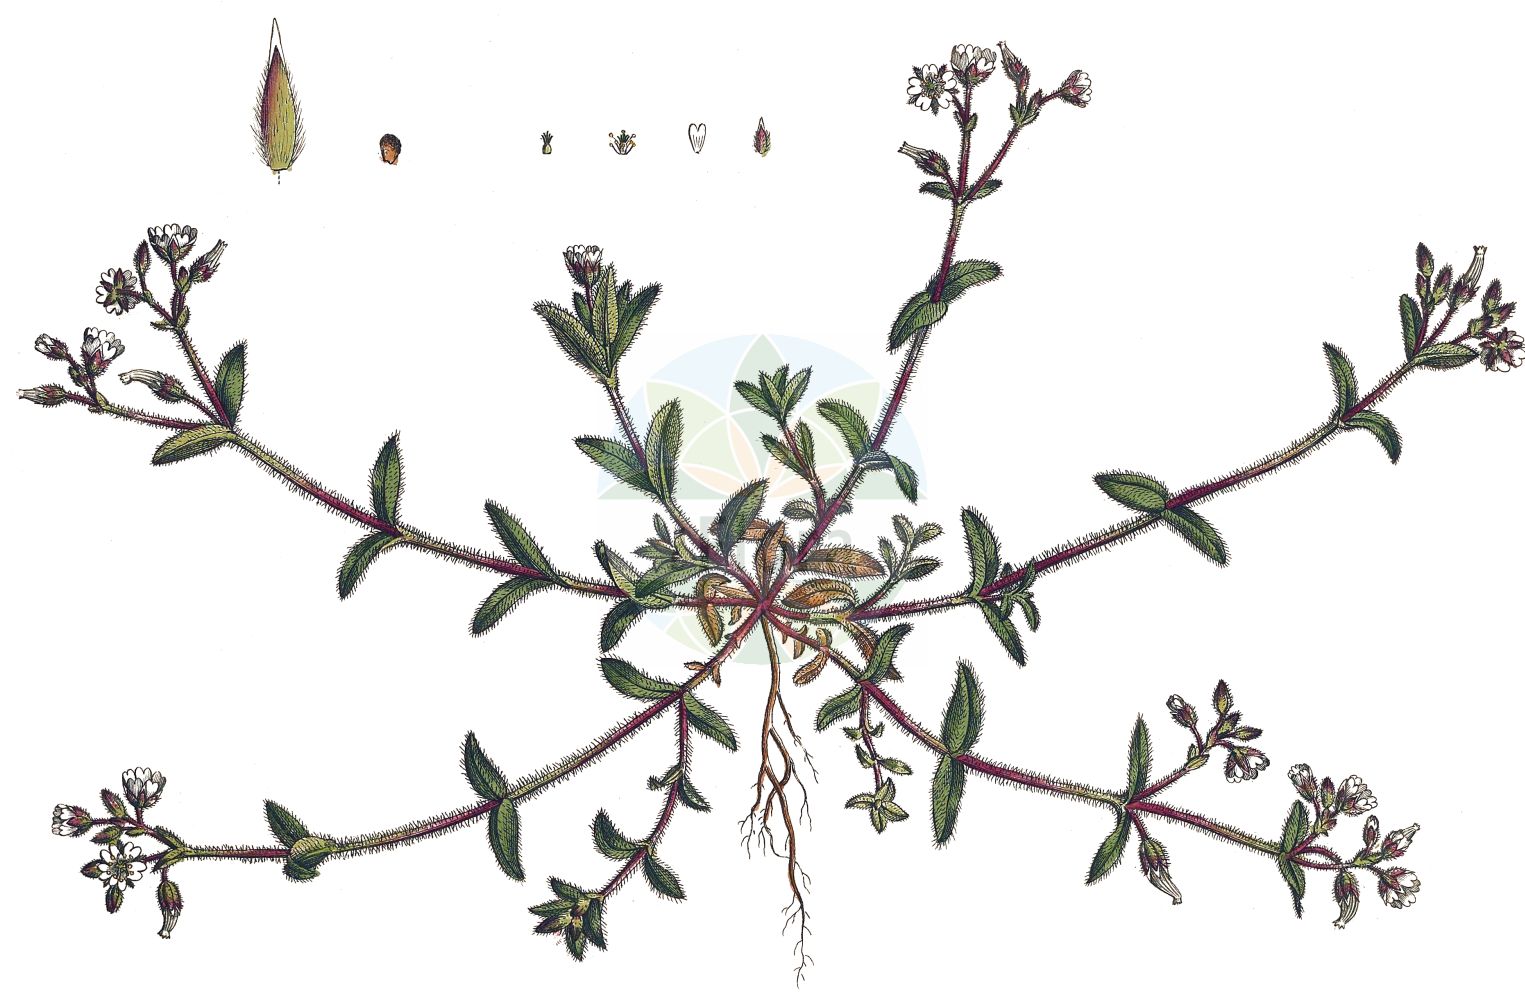 Historische Abbildung von Cerastium glomeratum (Knäuel-Hornkraut - Sticky Mouse-ear). Das Bild zeigt Blatt, Bluete, Frucht und Same. ---- Historical Drawing of Cerastium glomeratum (Knäuel-Hornkraut - Sticky Mouse-ear). The image is showing leaf, flower, fruit and seed.(Cerastium glomeratum,Knäuel-Hornkraut,Sticky Mouse-ear,Cerastium apetalum,Cerastium glomeratum,Cerastium viscosioides,Cerastium vulgatum,Knaeuel-Hornkraut,Sticky Mouse-ear,Mouse-ear Chickweed,Sticky Chickweed,Sticky Mouse-ear Chickweed,Cerastium,Hornkraut,Chickweed,Caryophyllaceae,Nelkengewächse,Pink family,Blatt,Bluete,Frucht,Same,leaf,flower,fruit,seed,Curtis (1777-1798))